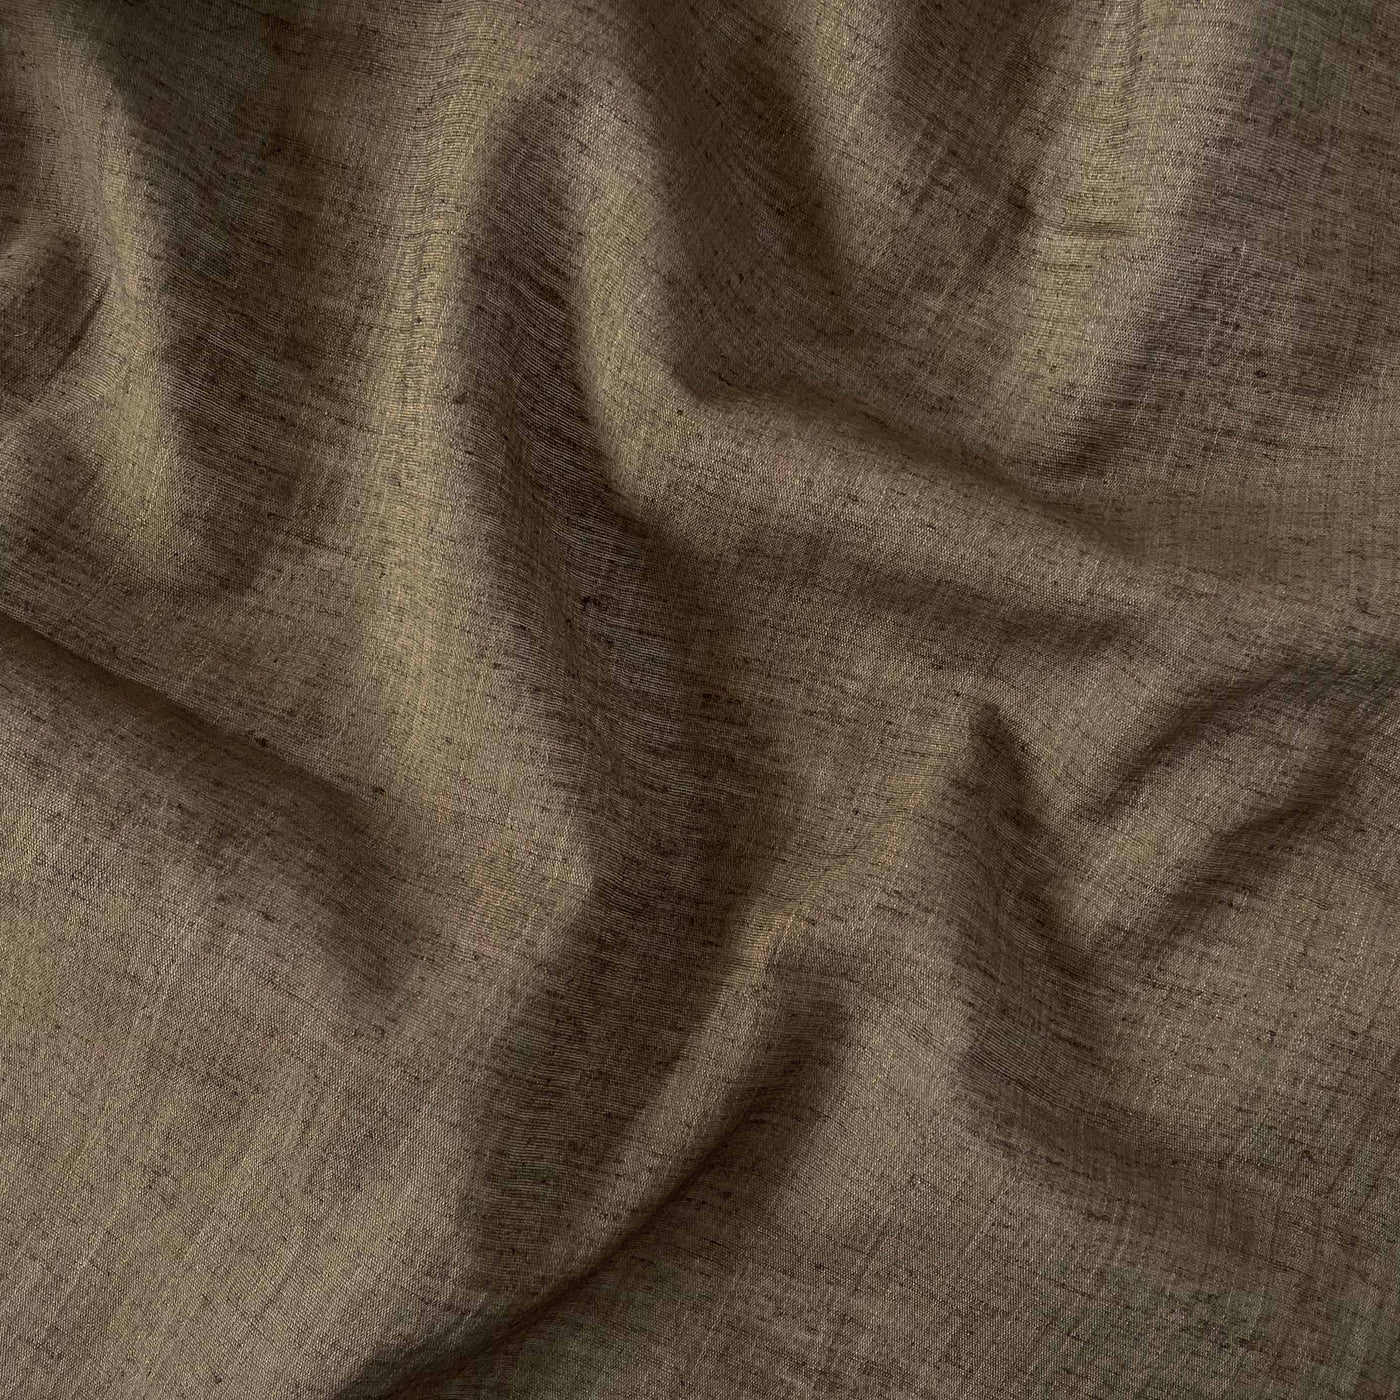 Blended Silk Linen Kurta Set Cut Piece (CUT PIECE) Nutmeg Brown Color Blended Silk Linen Fabric